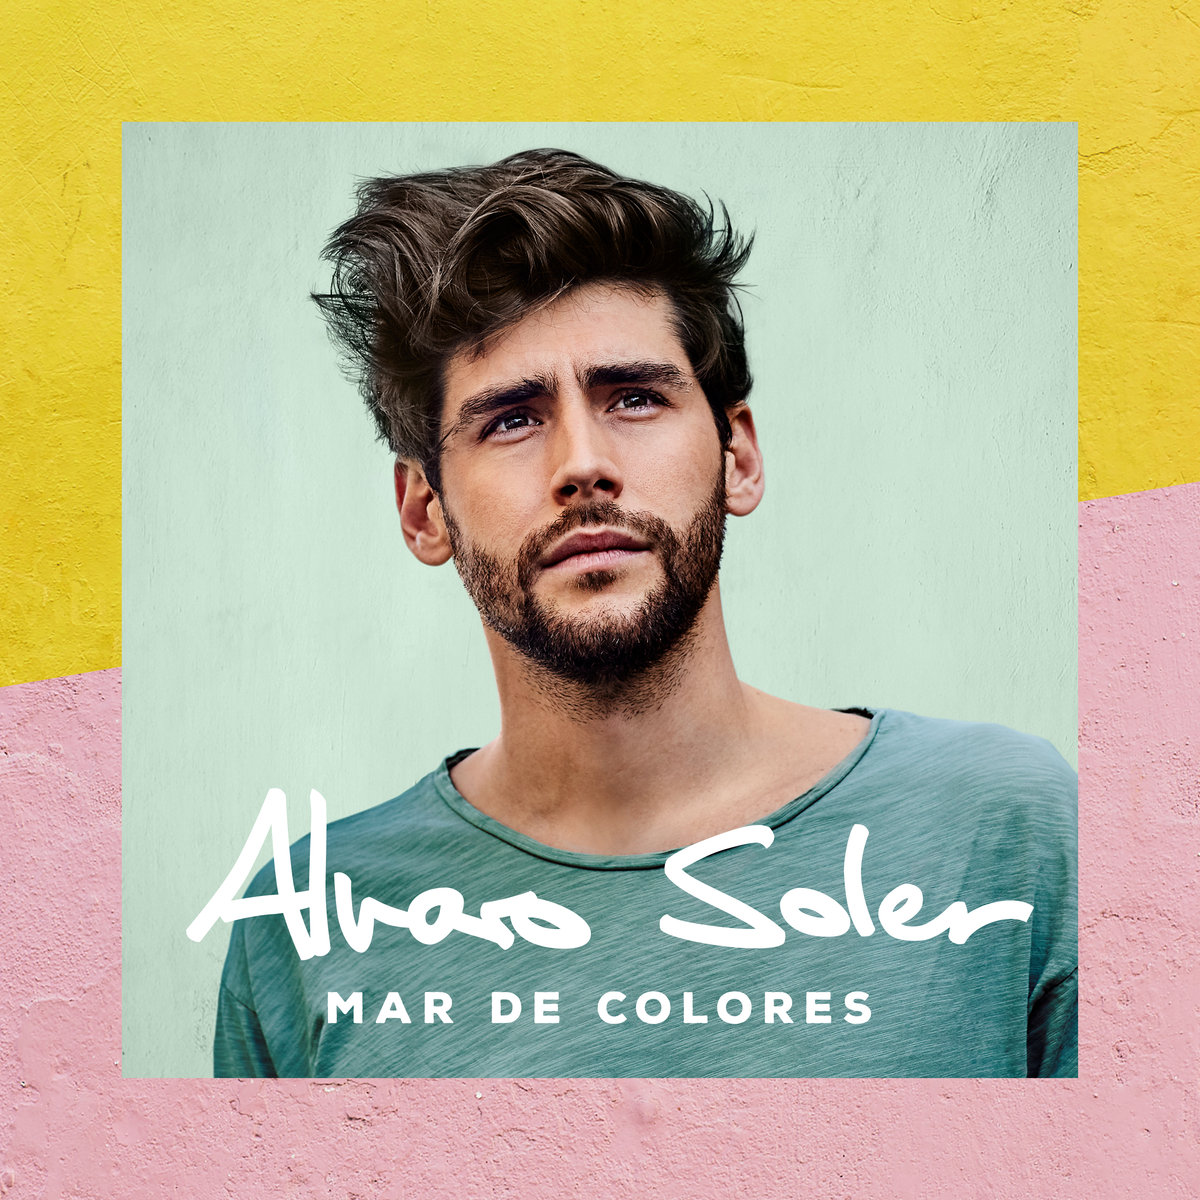 Album - mar de colores